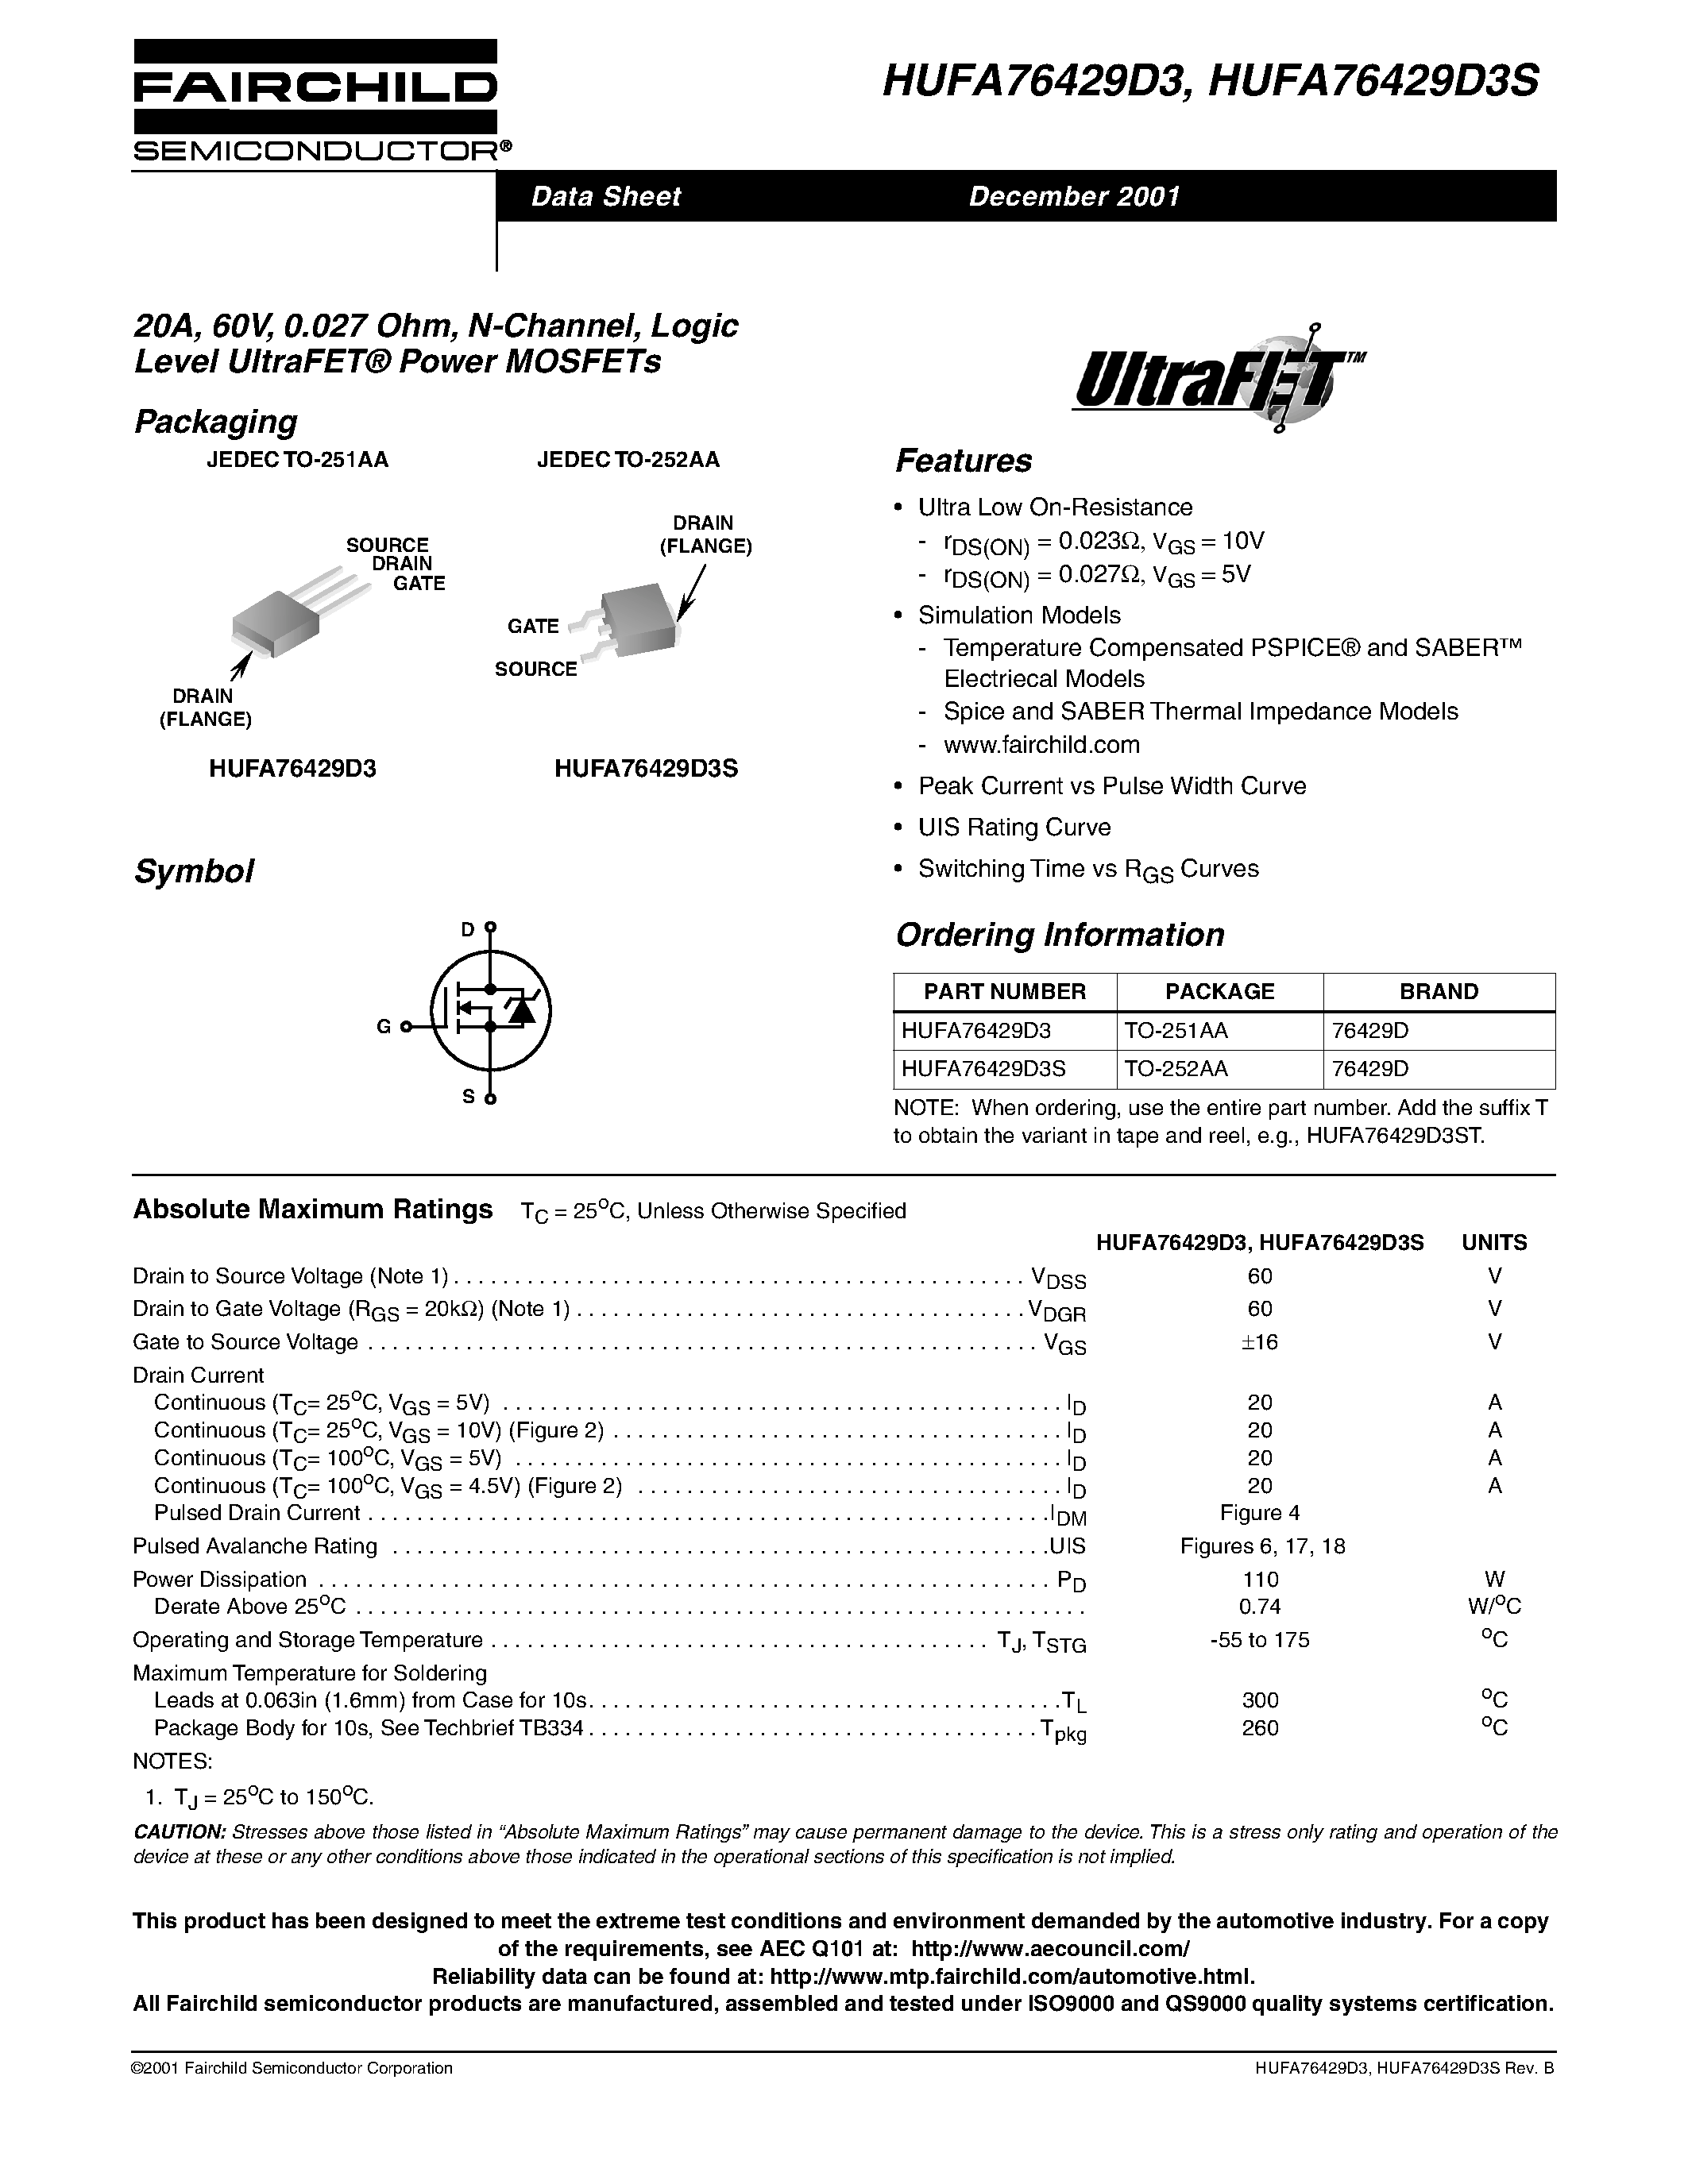 Даташит HUFA76429D3 - 20A/ 60V/ 0.027 Ohm/ N-Channel/ Logic Level UltraFET Power MOSFETs страница 1